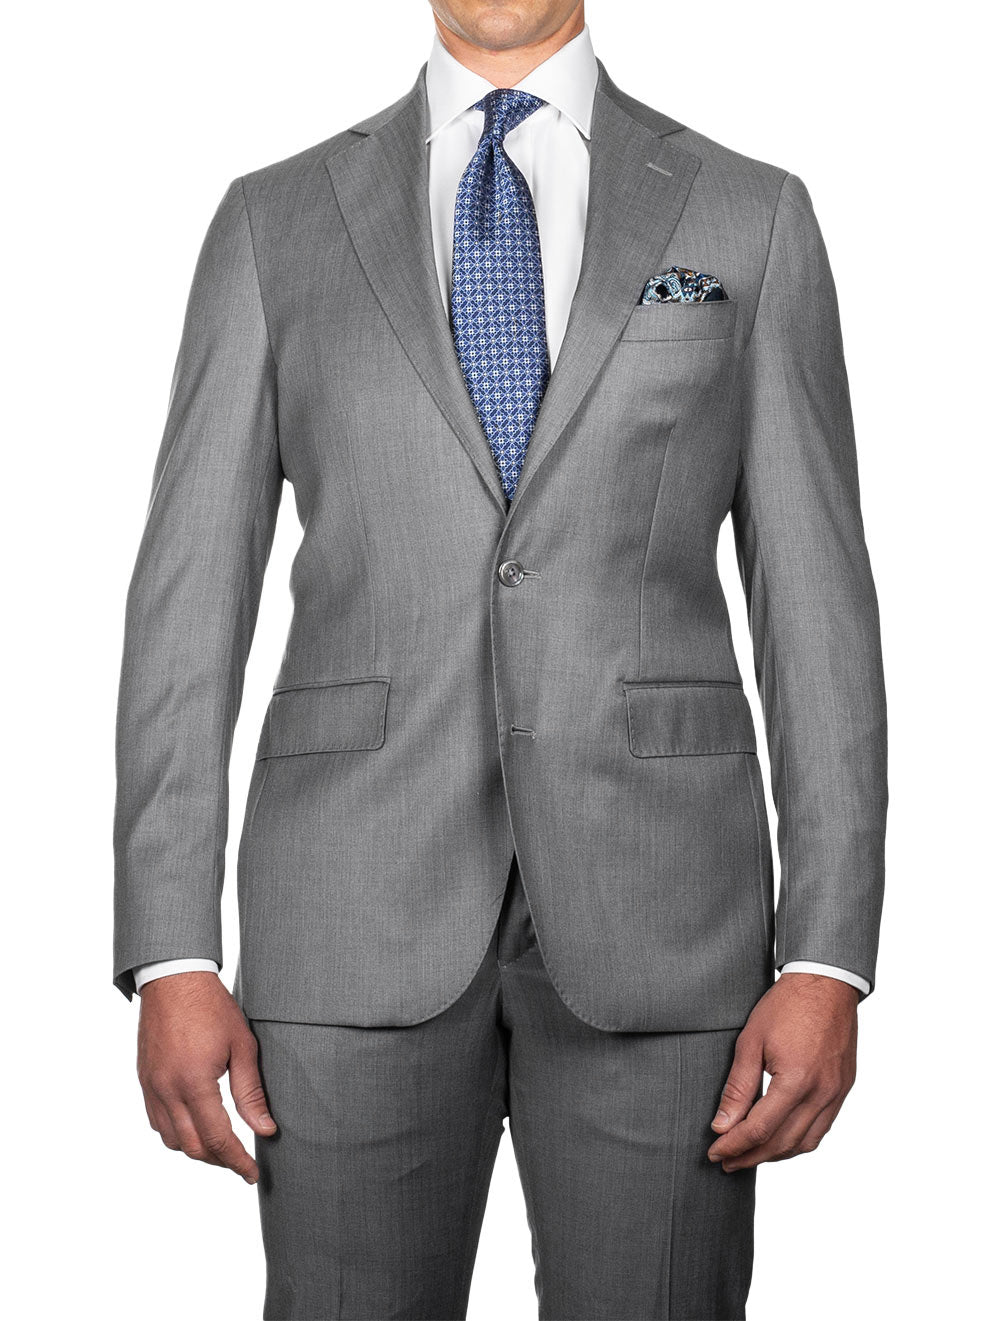 Mens Suits - Suits For Men | Louis Copeland & Sons